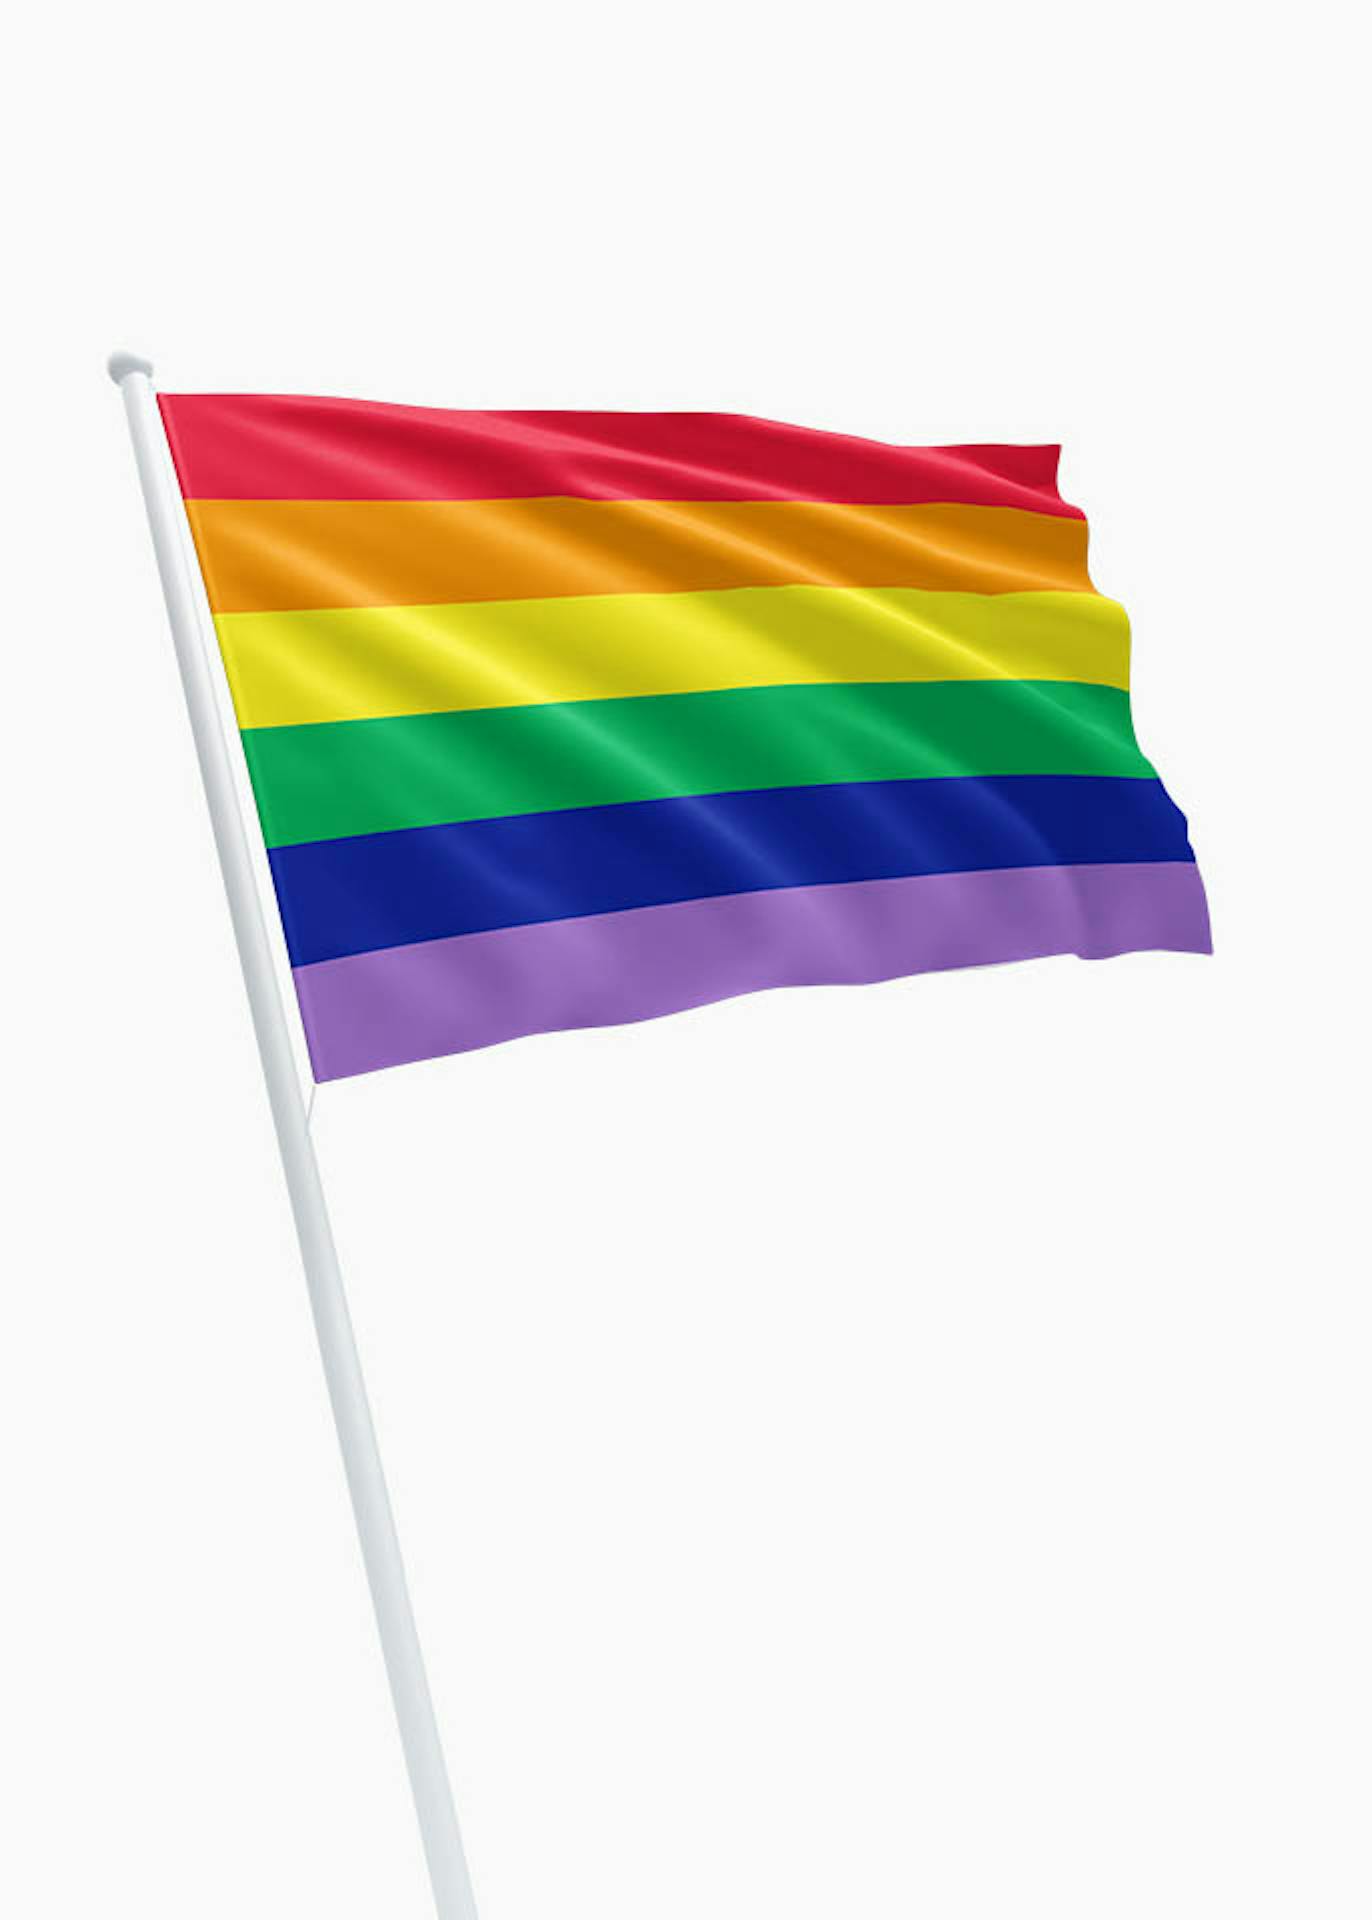 Evalueerbaar tint werkloosheid Gay Pride Regenboogvlag kopen? Dé specialist in vlaggen! - DVC